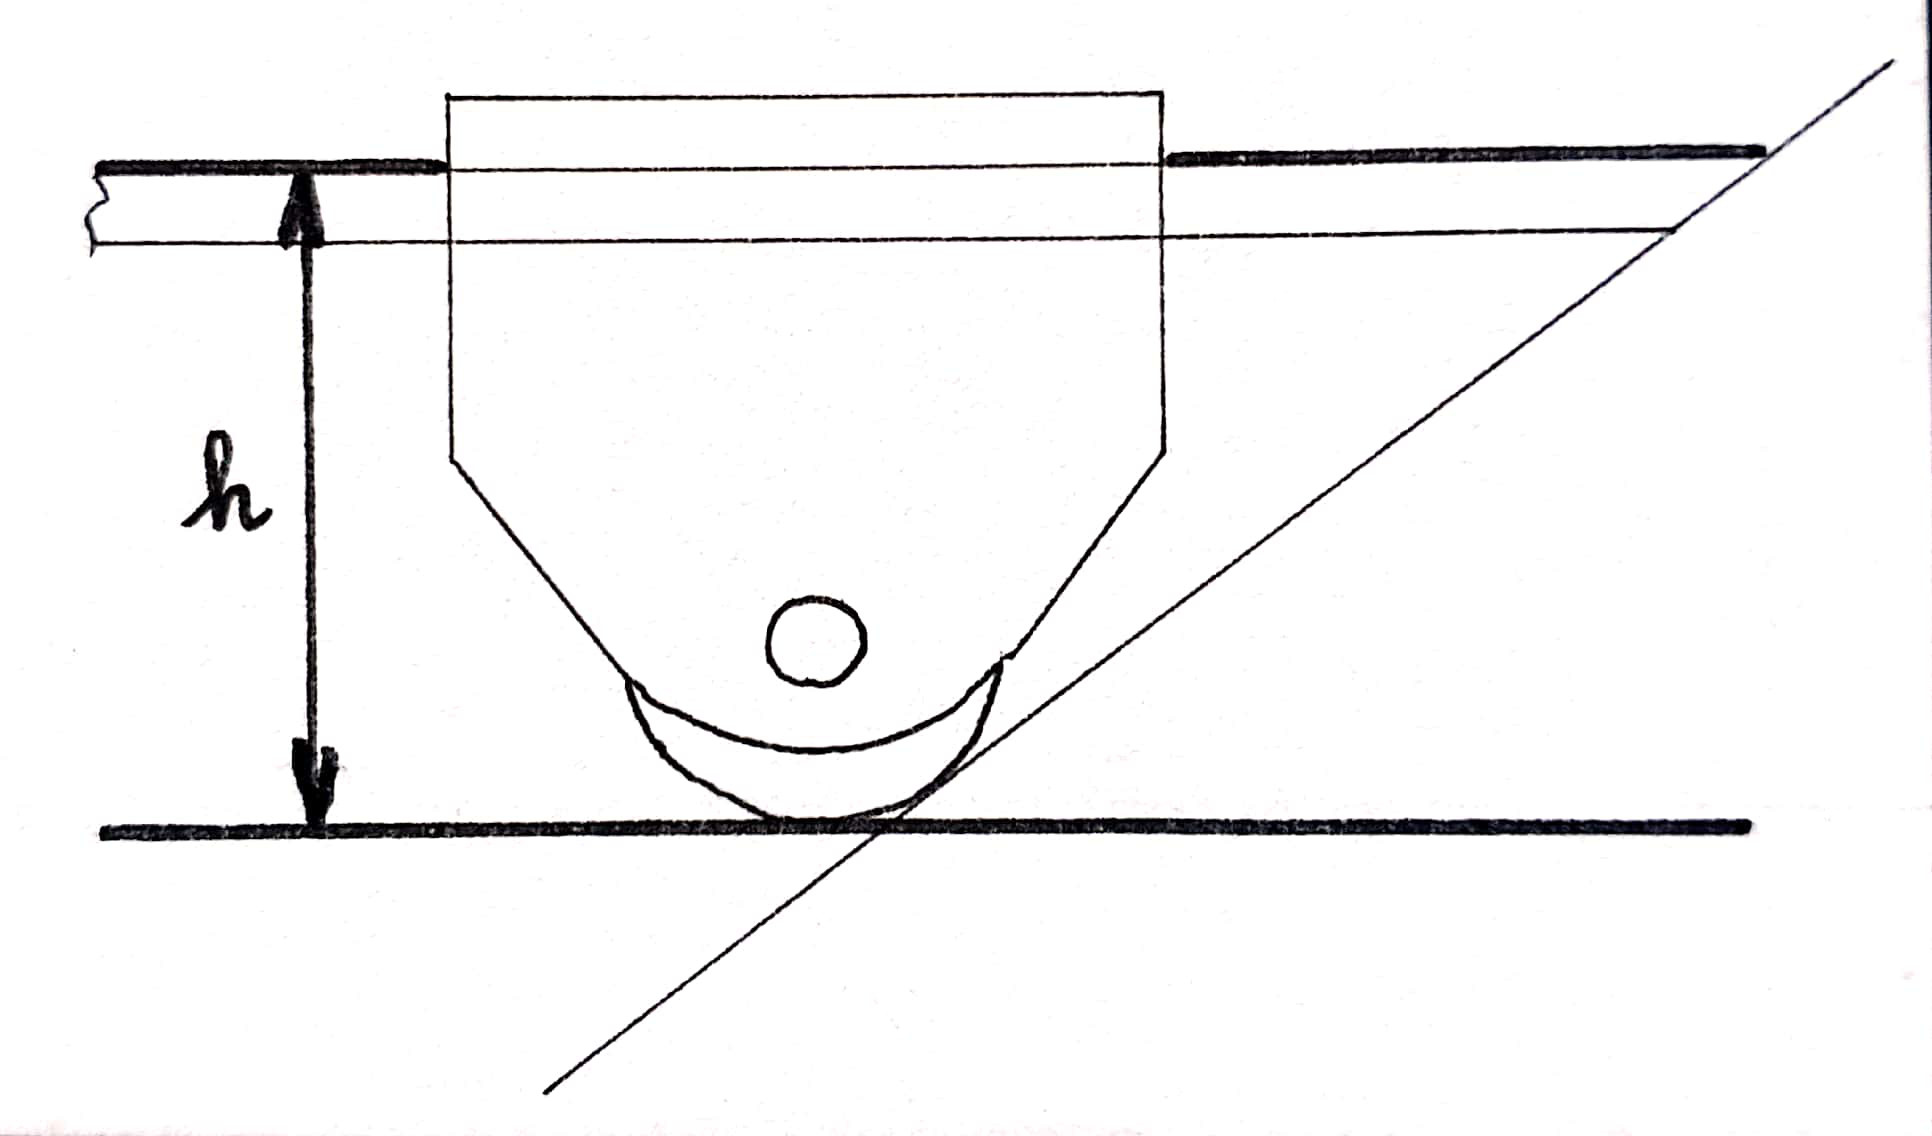 Un gabarit d'angle pour guide d'affûtage : méthode géométrique